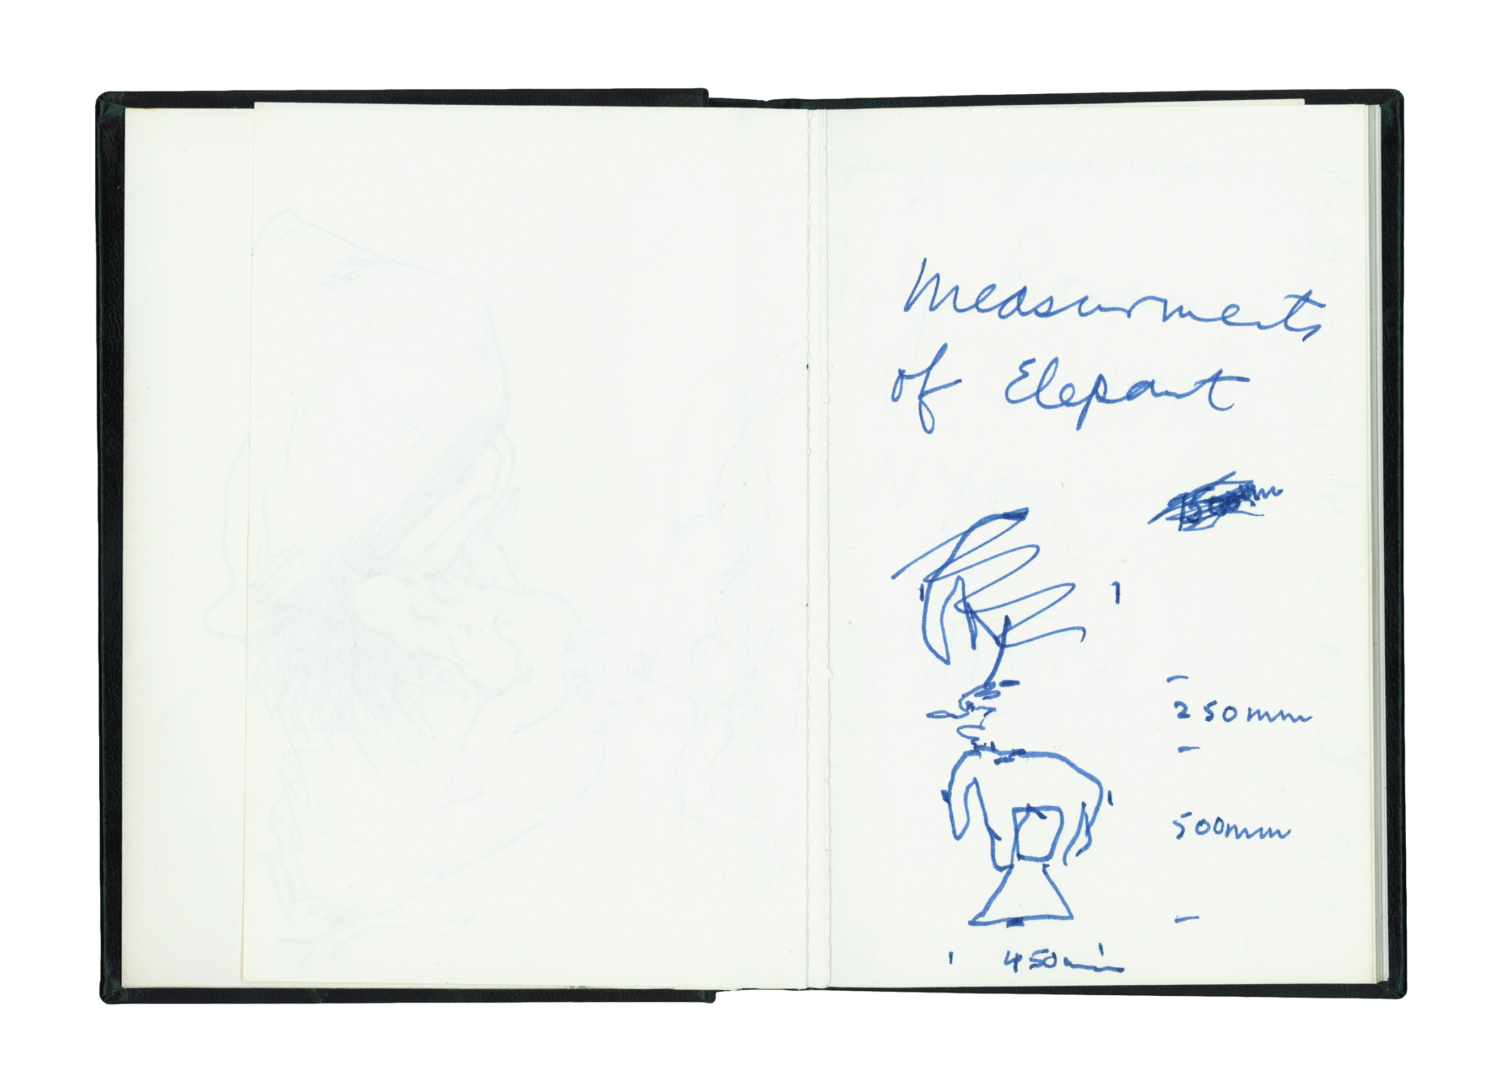 Sketch and notebook (November – December 1983) (November 1983 NY Flan Gino)